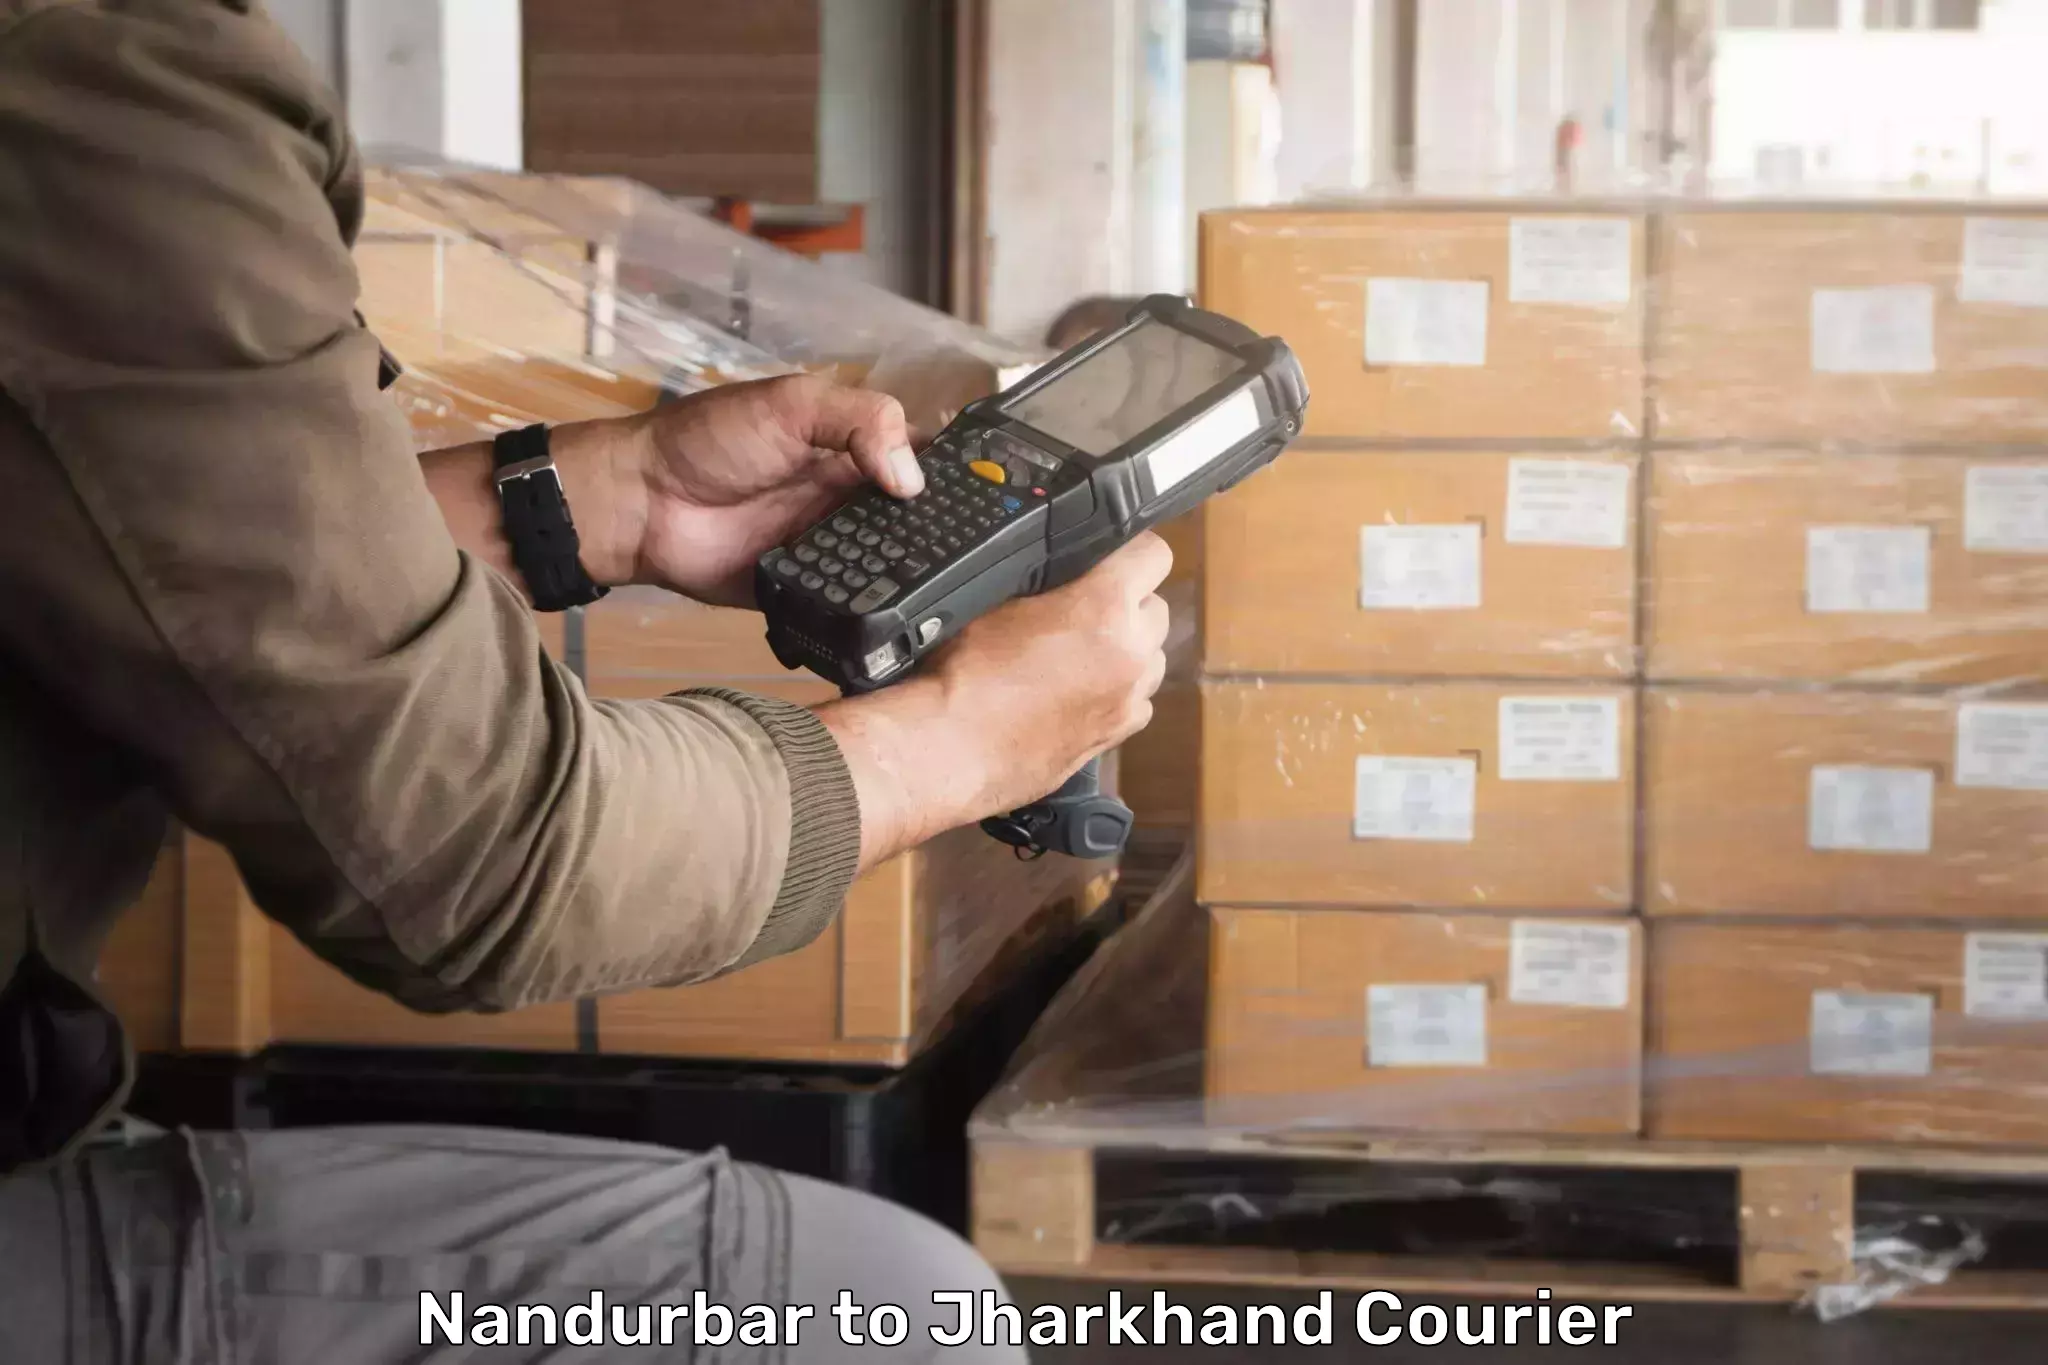 Customer-centric shipping Nandurbar to Nagar Untari